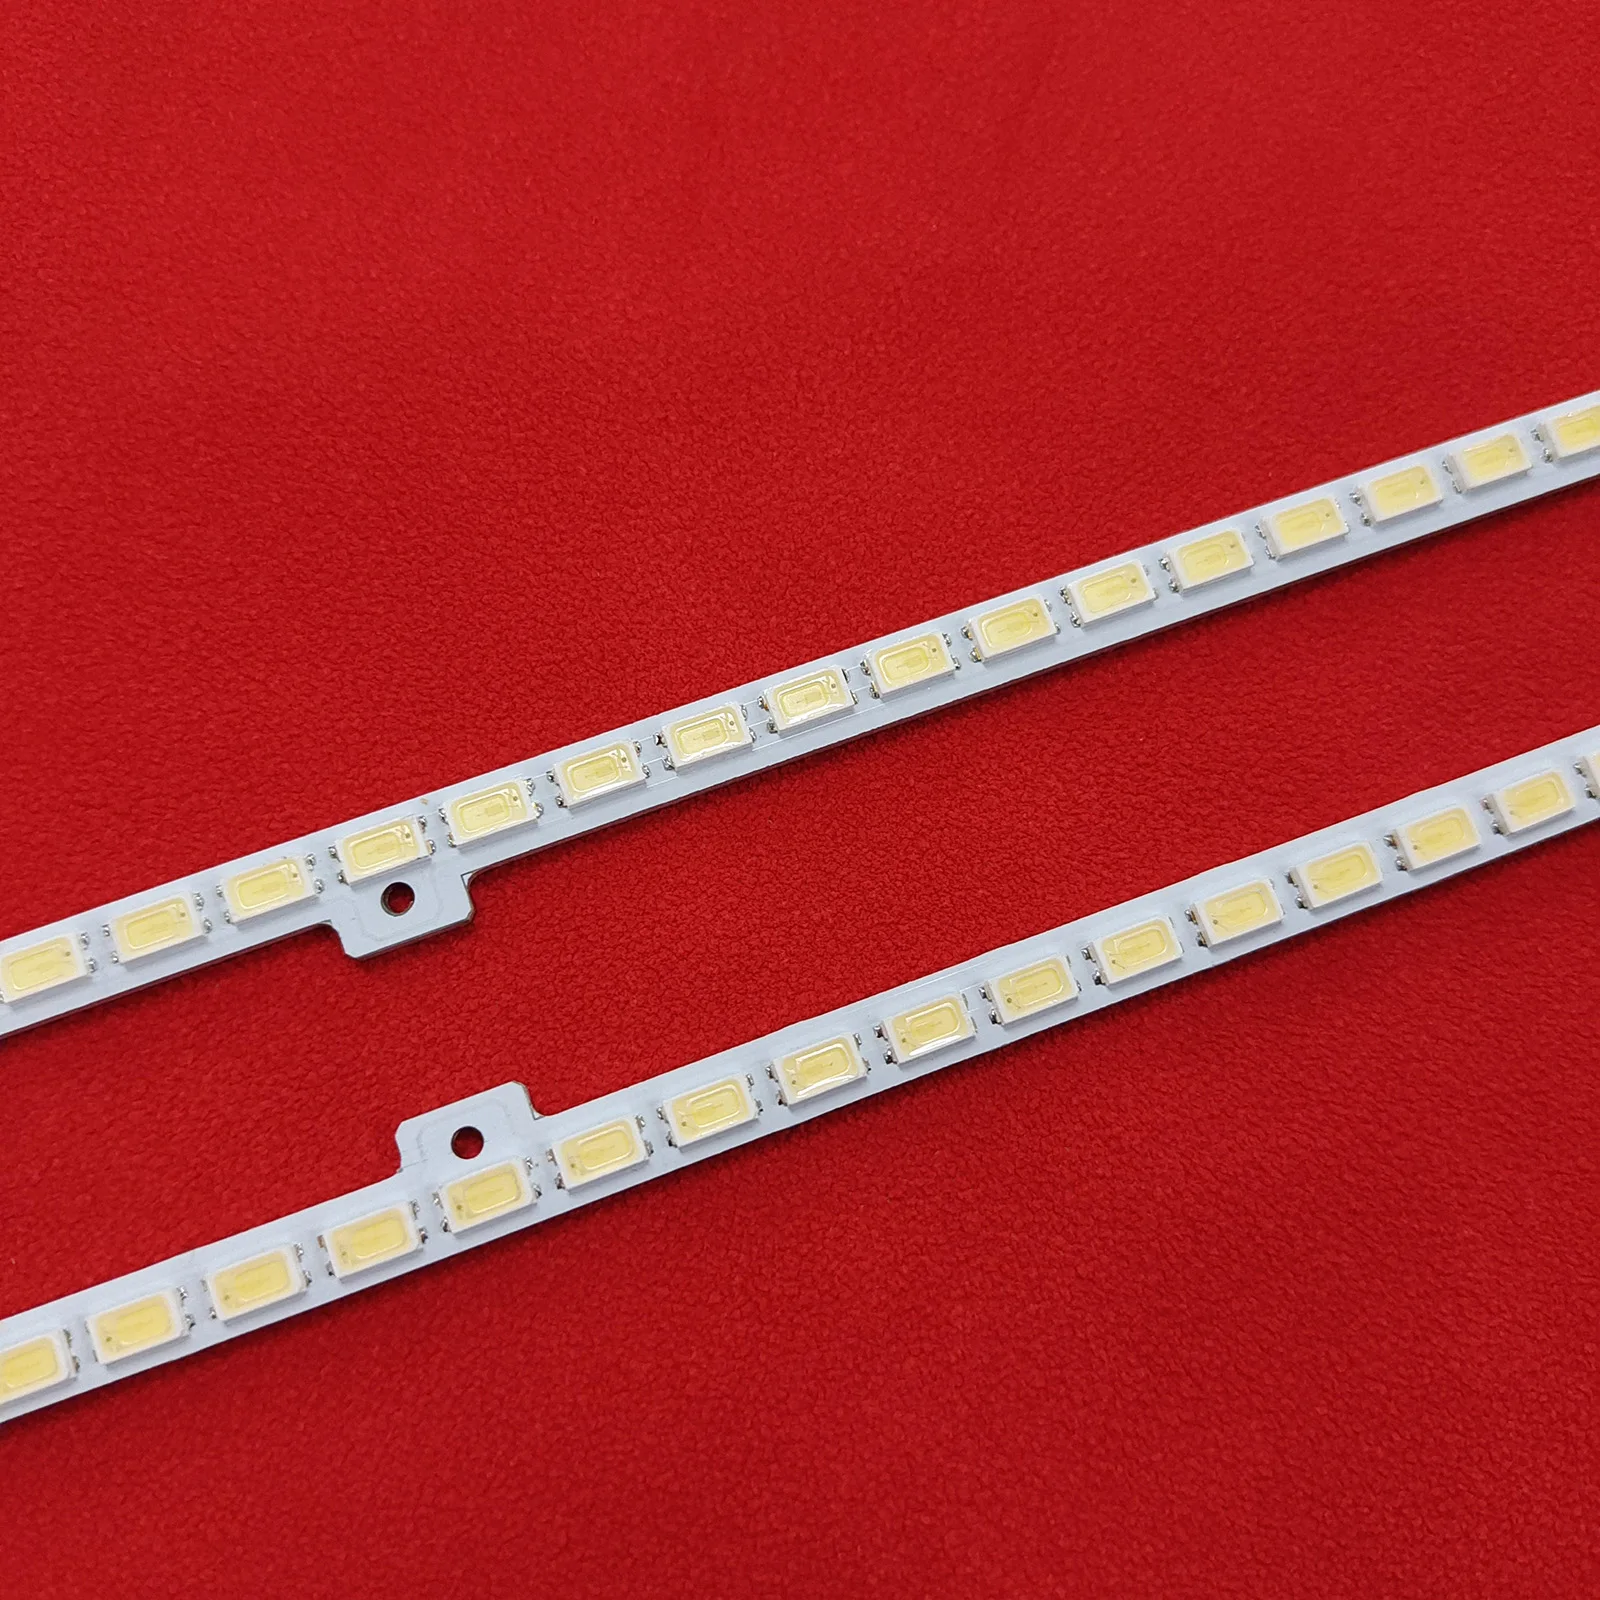 Tira de luces LED de retroiluminación, accesorio para UE46D5000 2011SVS46-FHD-5K6K UE46D6000 UN46D6000 UA46D5000 JVG4-460SMB-R1 LTJ460HN01, BN64-01644A